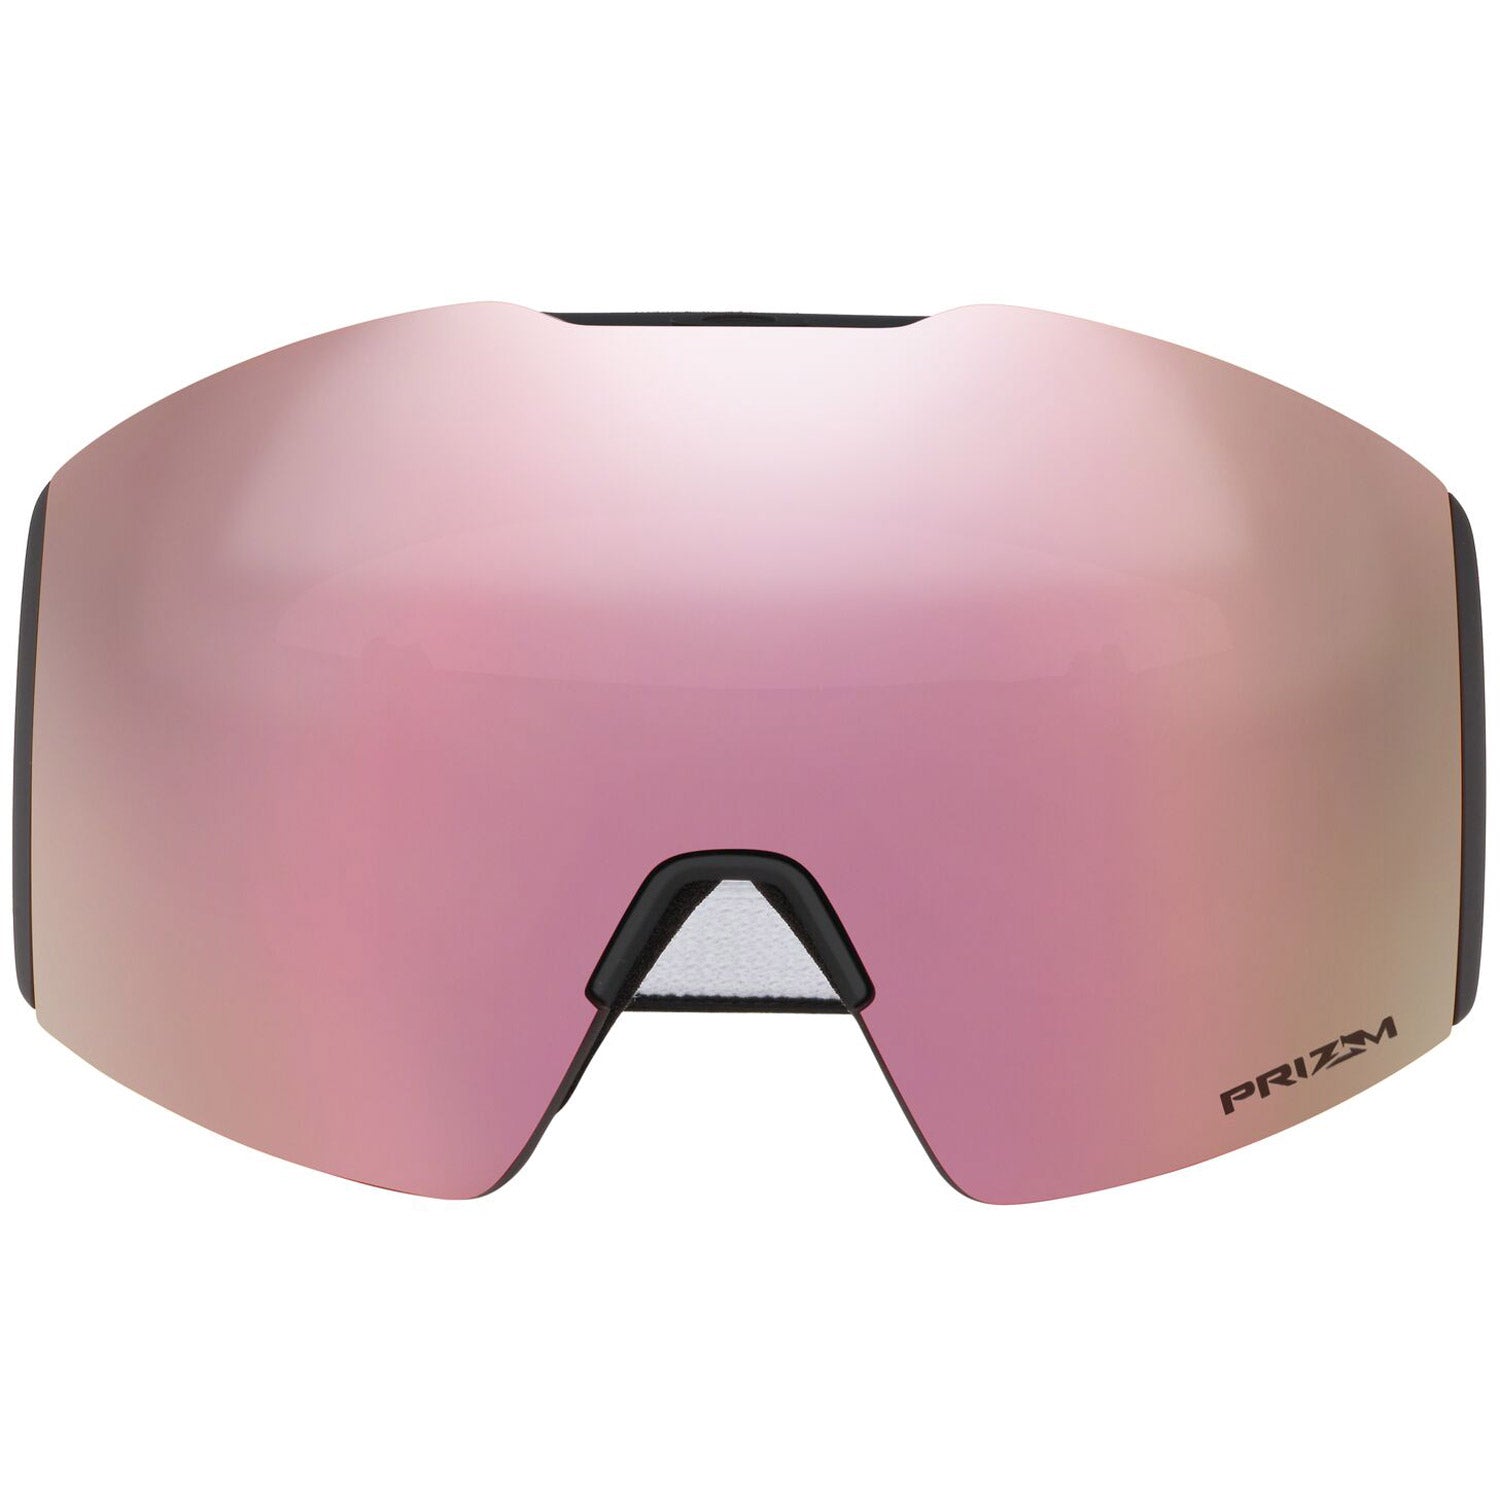 Oakley Fall Line L Snow Goggles 2023 Matte Black Prizm Hi Pink Iridium Lens